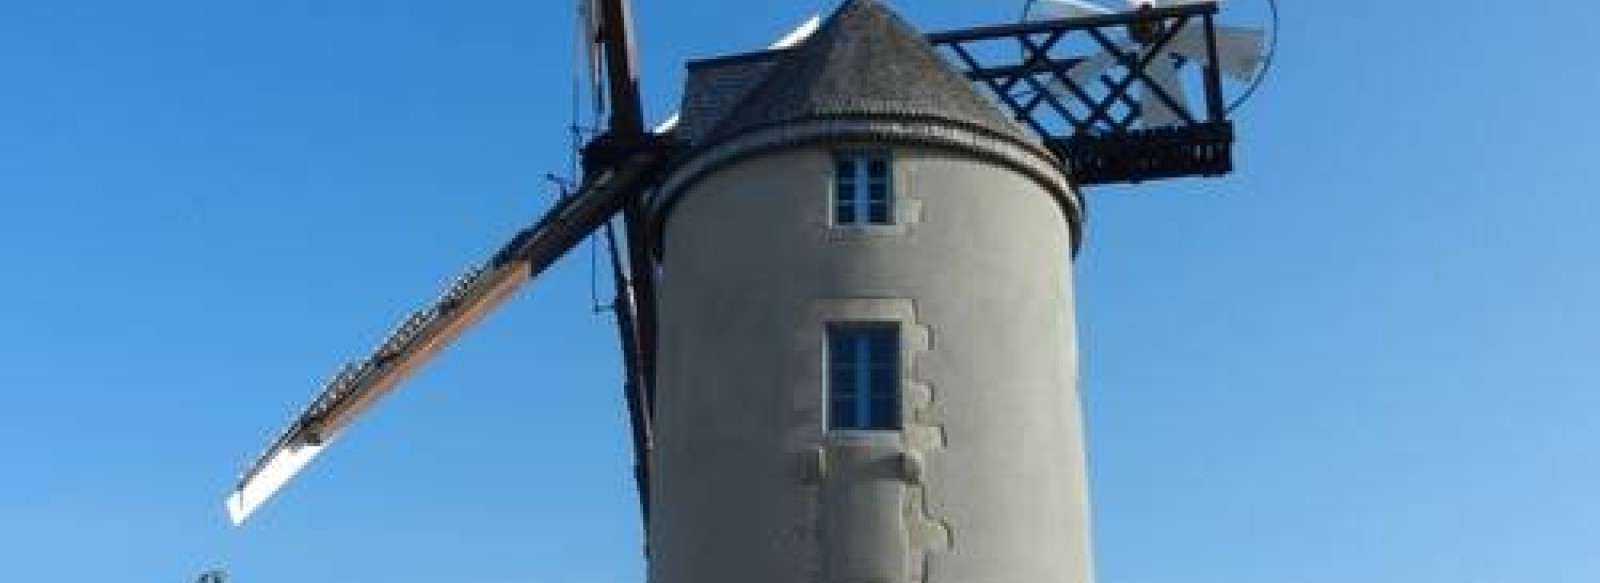 Visite guidee du moulin de Kerbroue